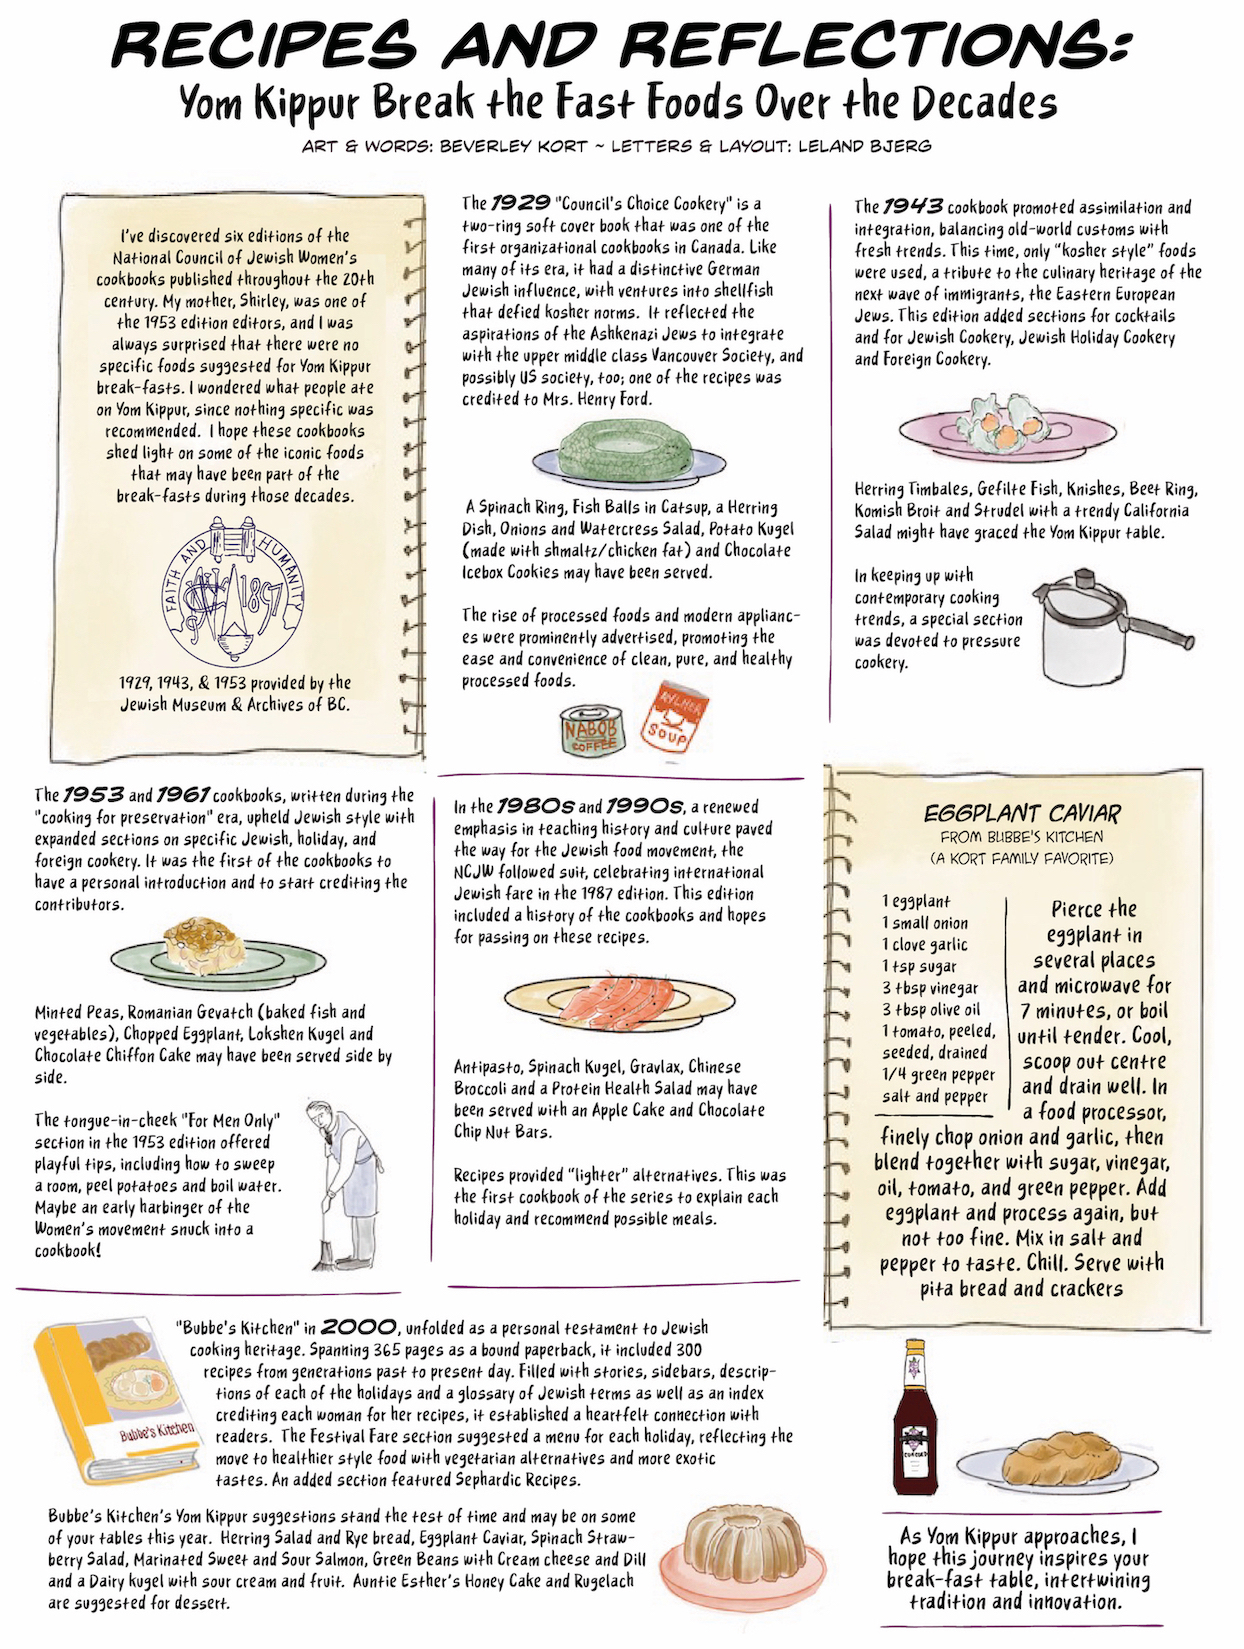 image - Yom Kippur break fast foods by Beverley Kort & Leland Berg looking at NCJW cookbooks